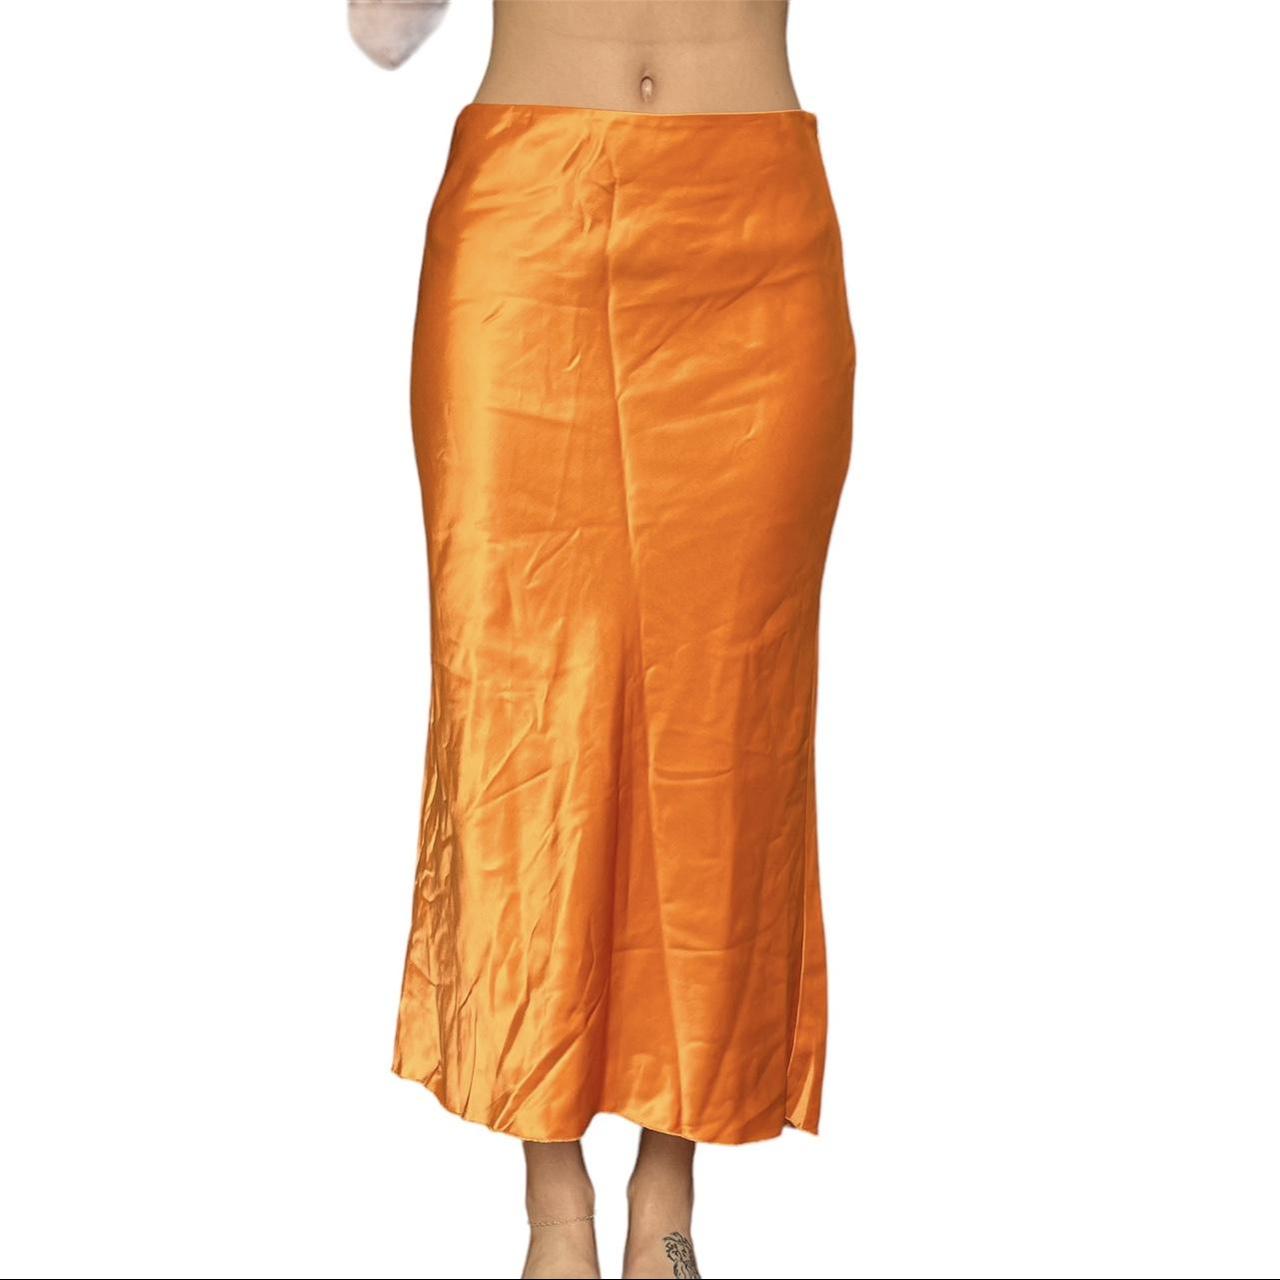 Tibi Women's Orange Skirt | Depop